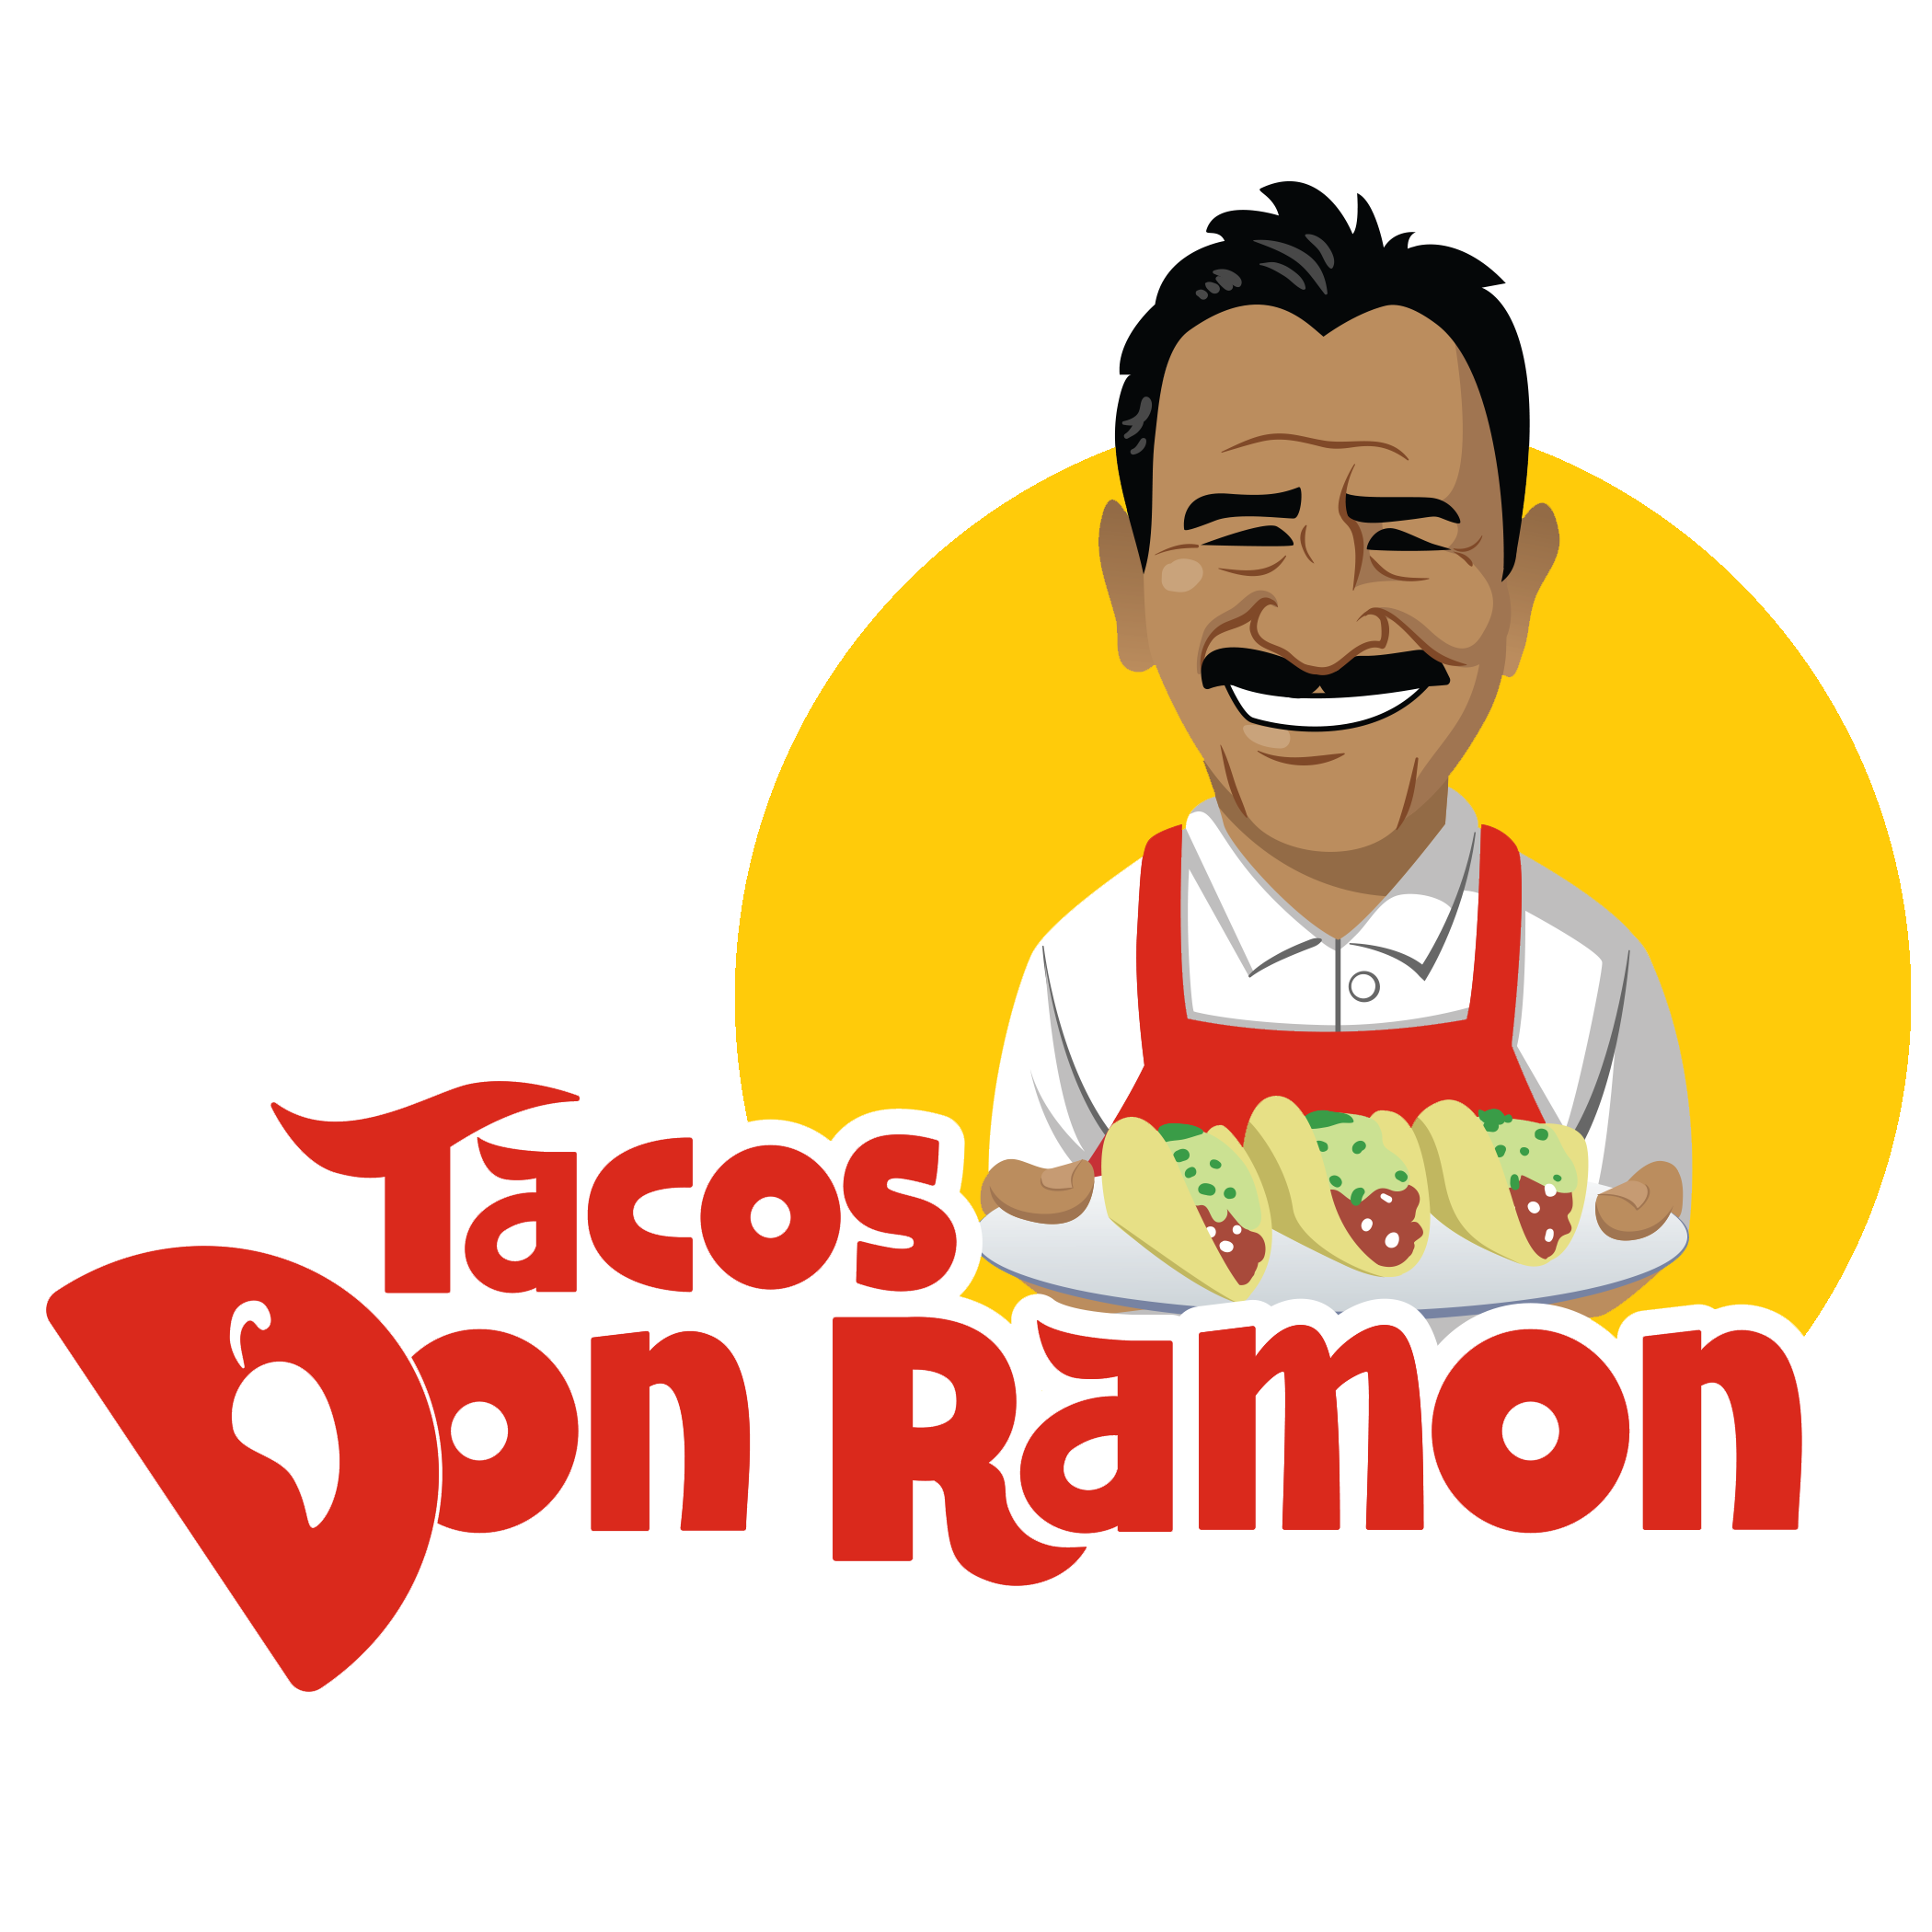 Tacos Don Ramon: Estilo Mexico D.F.